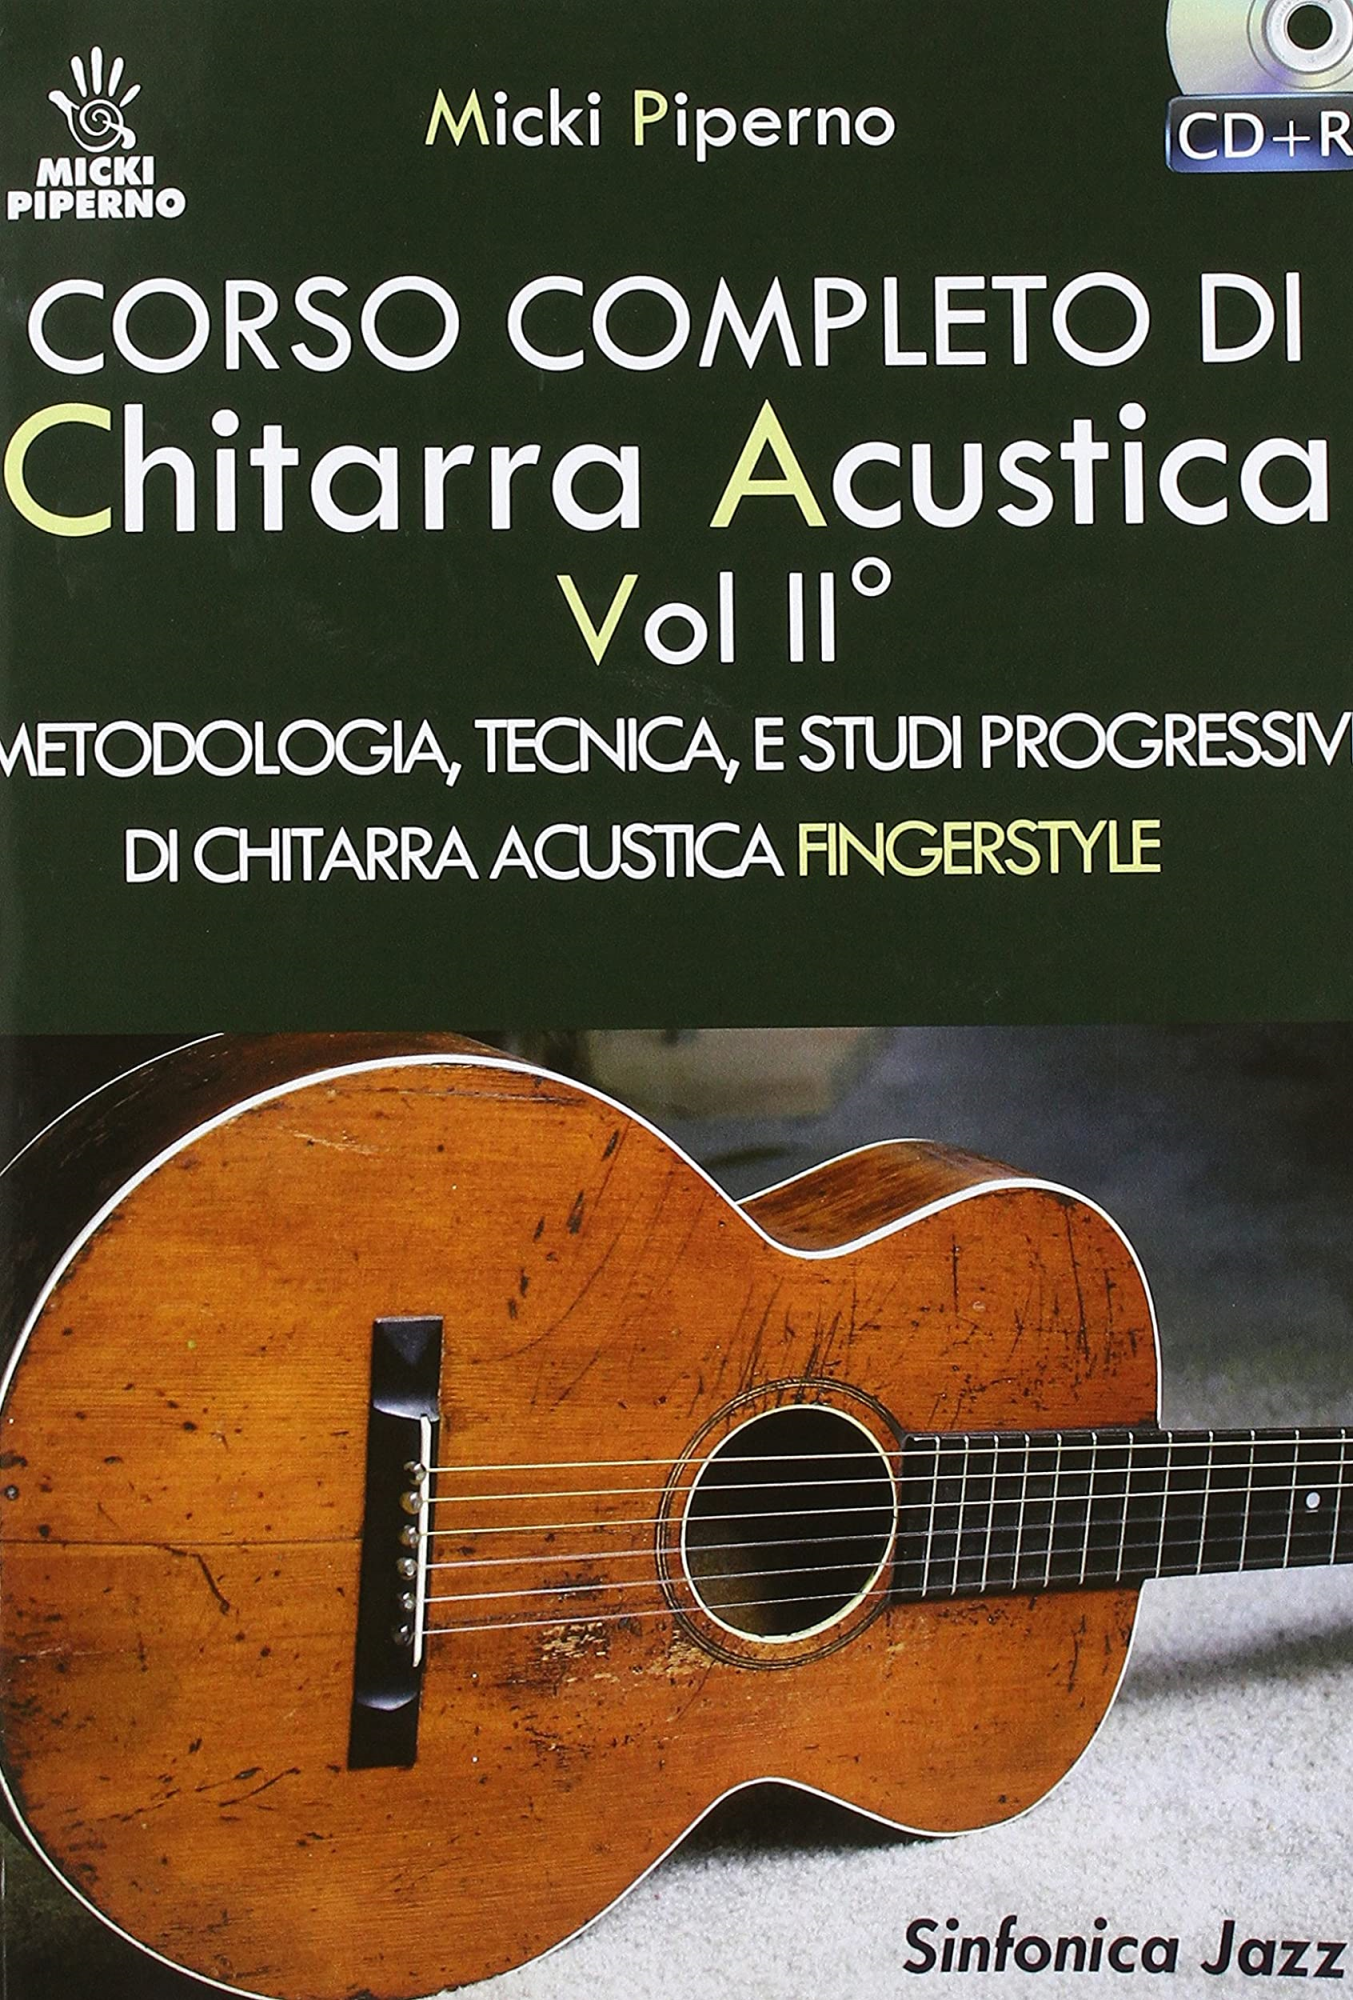 Libri Micki Piperno - Corso Completo Di Chitarra Acustica. Con CD-Audio NUOVO SIGILLATO, EDIZIONE DEL 01/01/2018 SUBITO DISPONIBILE